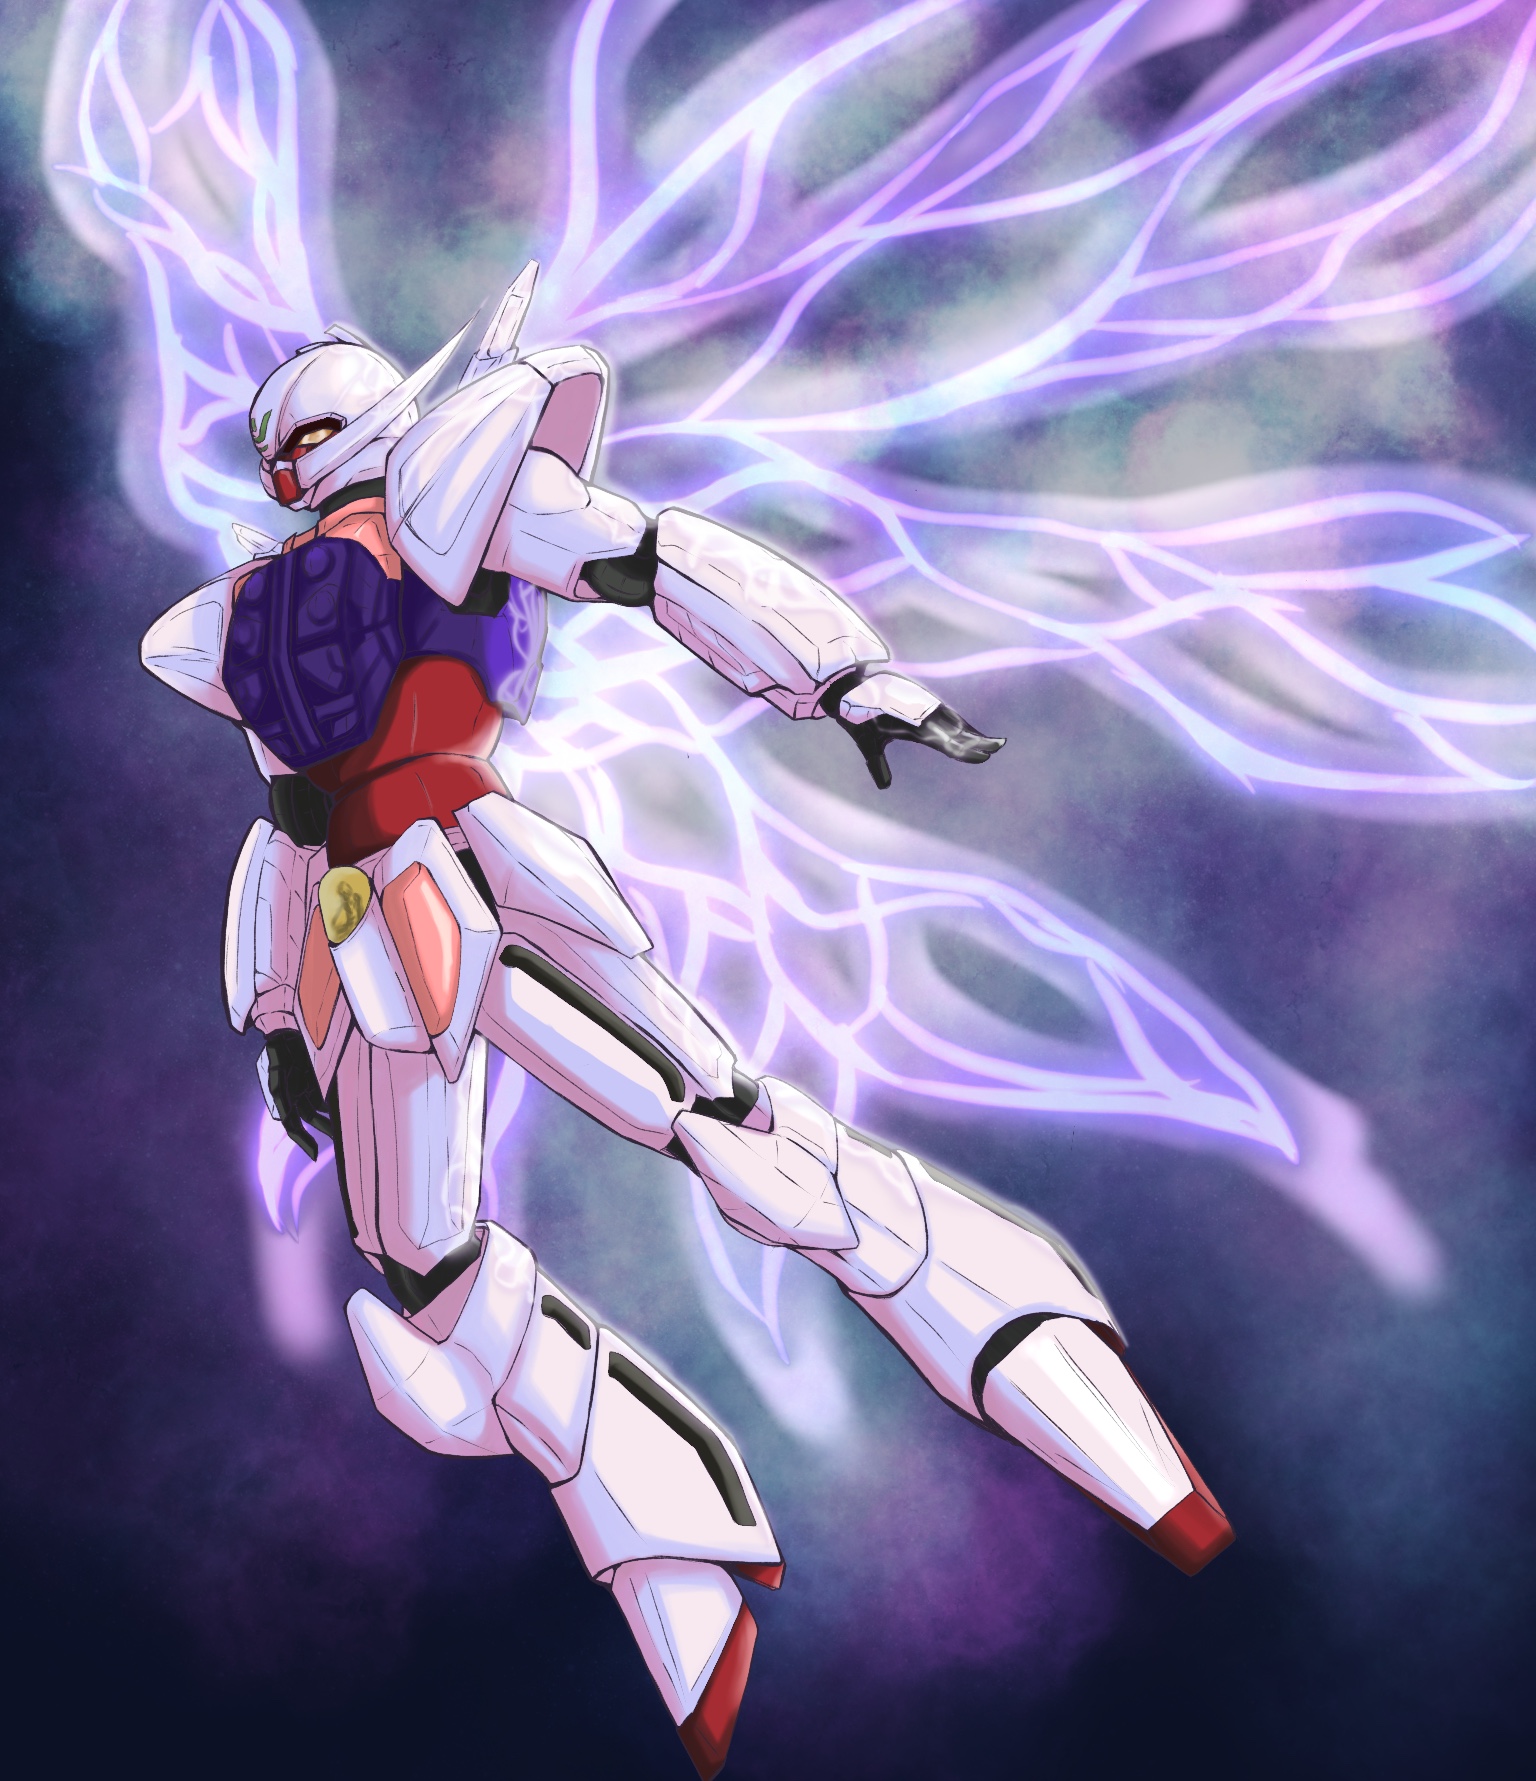 Anime 1536x1781 anime mechs Super Robot Taisen ∀ Gundam System-∀99 ∀ Gundam Gundam artwork digital art fan art